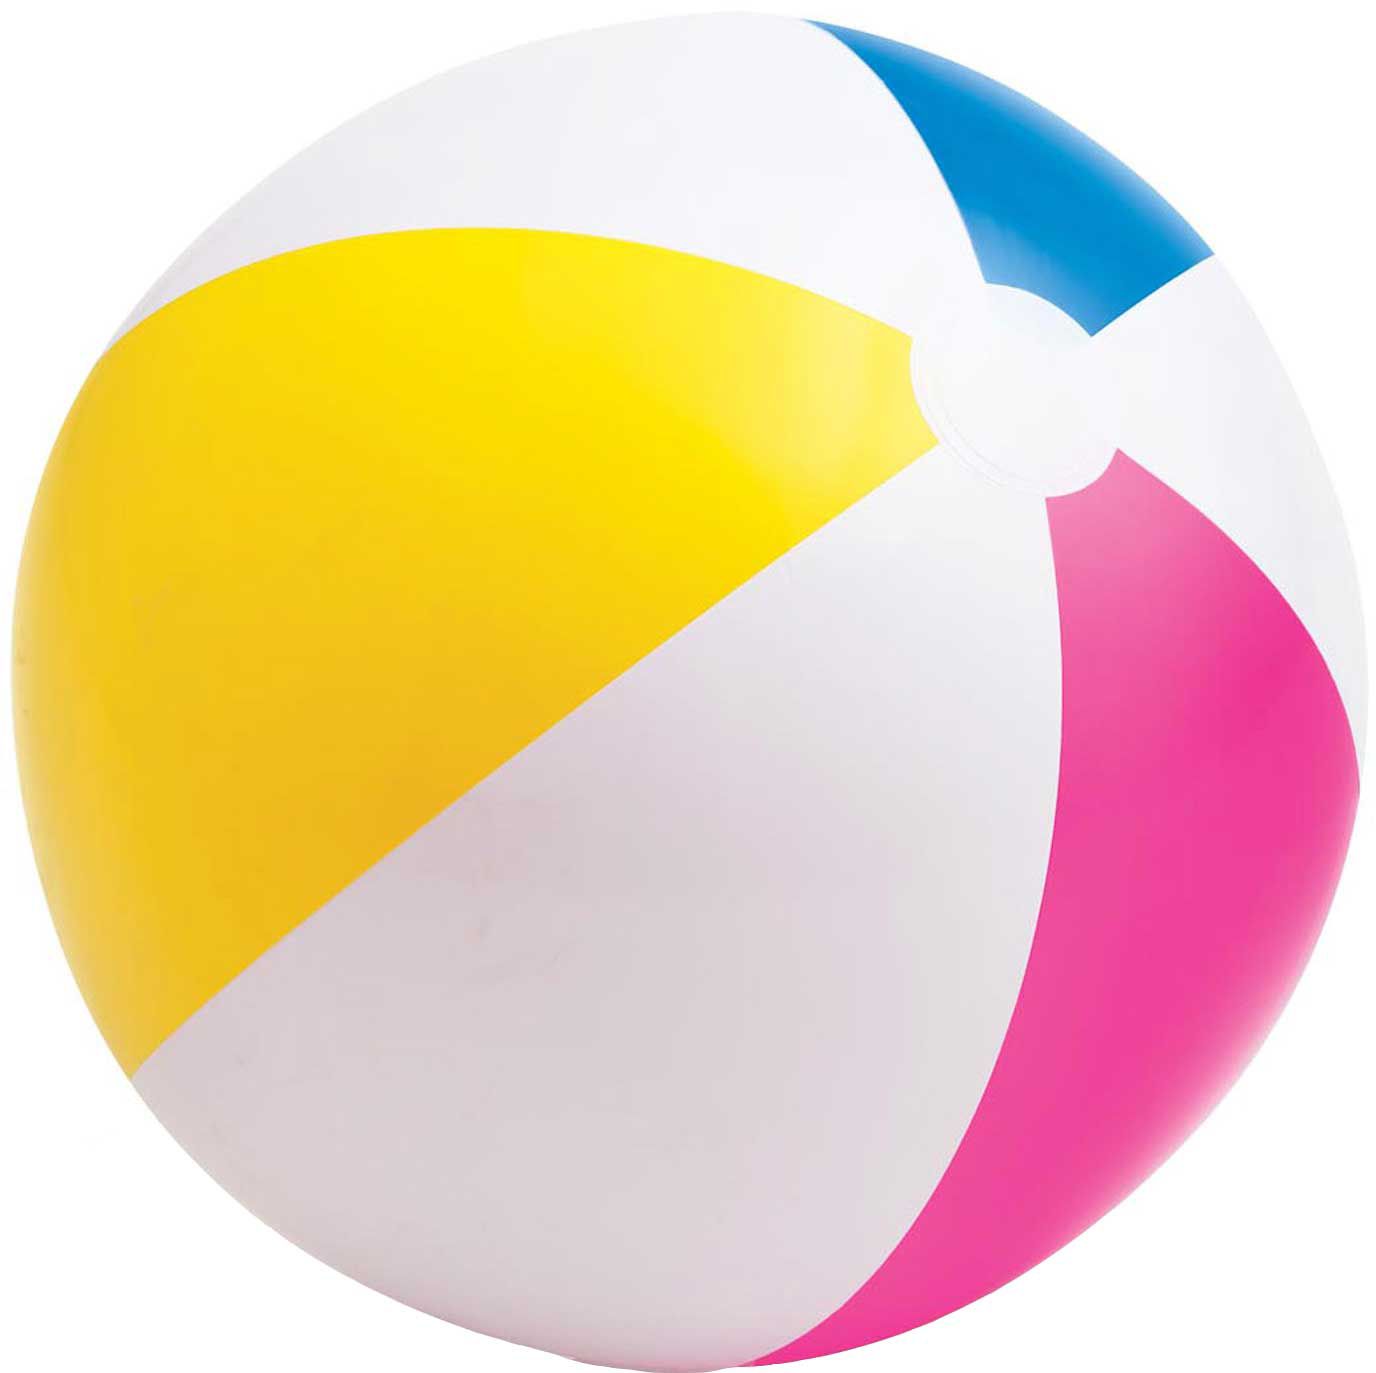 a beach ball